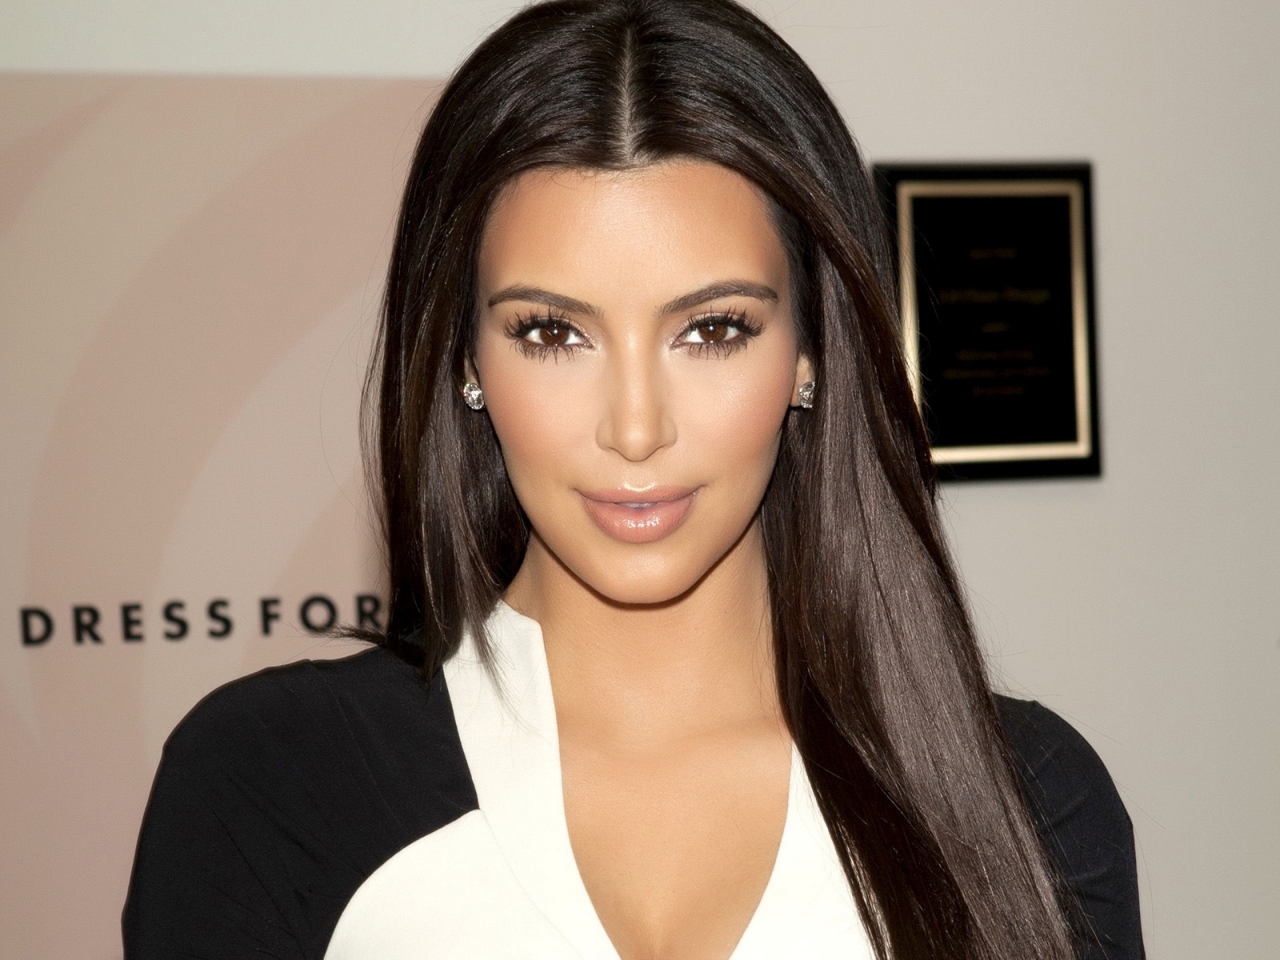 Gorgeous Kim Kardashian for 1280 x 960 resolution